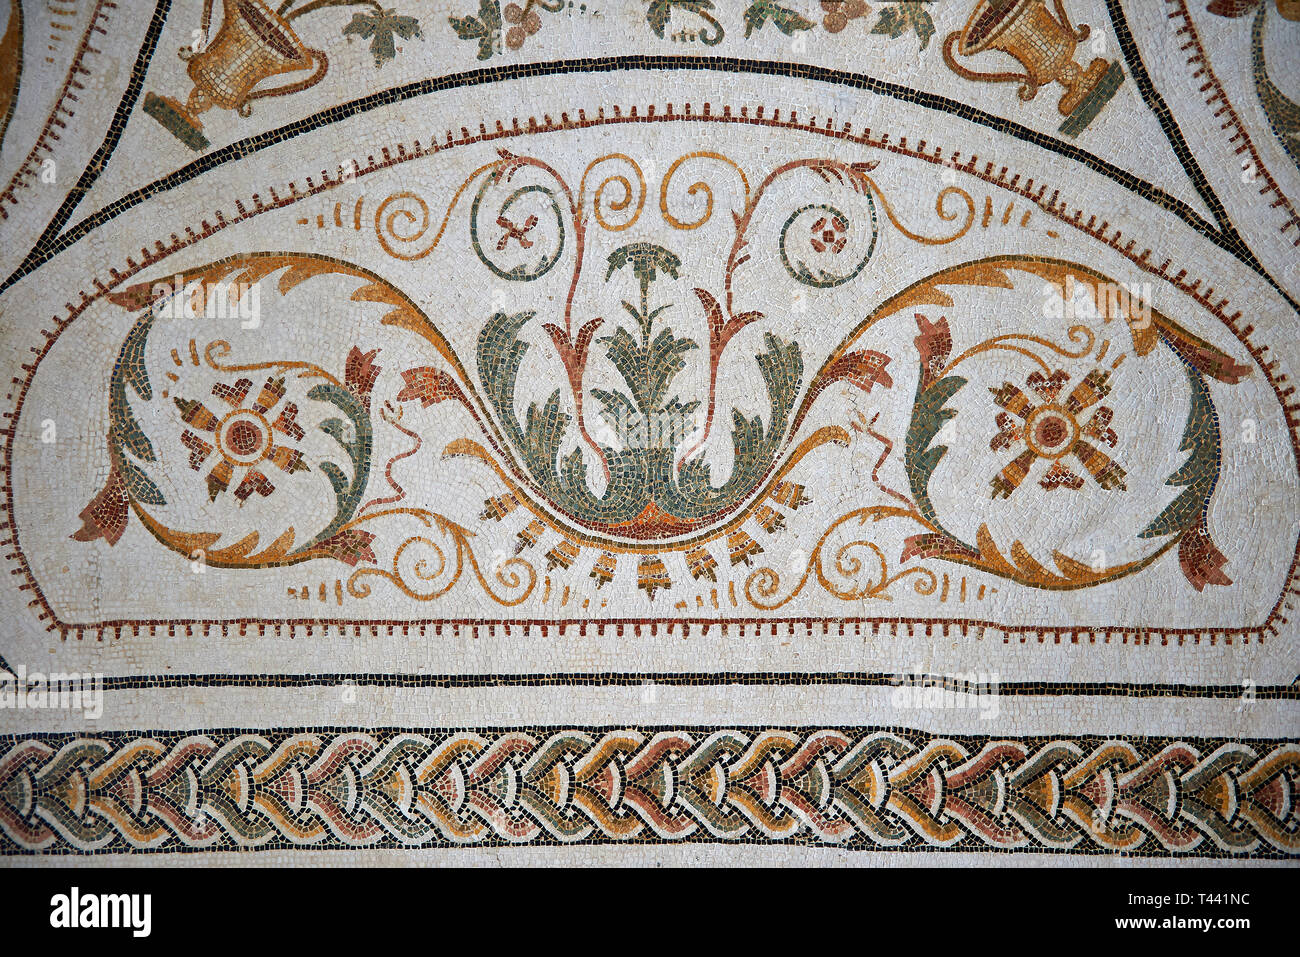 Bild eines römischen Mosaiken Entwurf mit einer geometrischen Ranke Designs aus einer Dionysos Mosaik. Die alte römische Stadt Thysdrus. 2. El Stockfoto